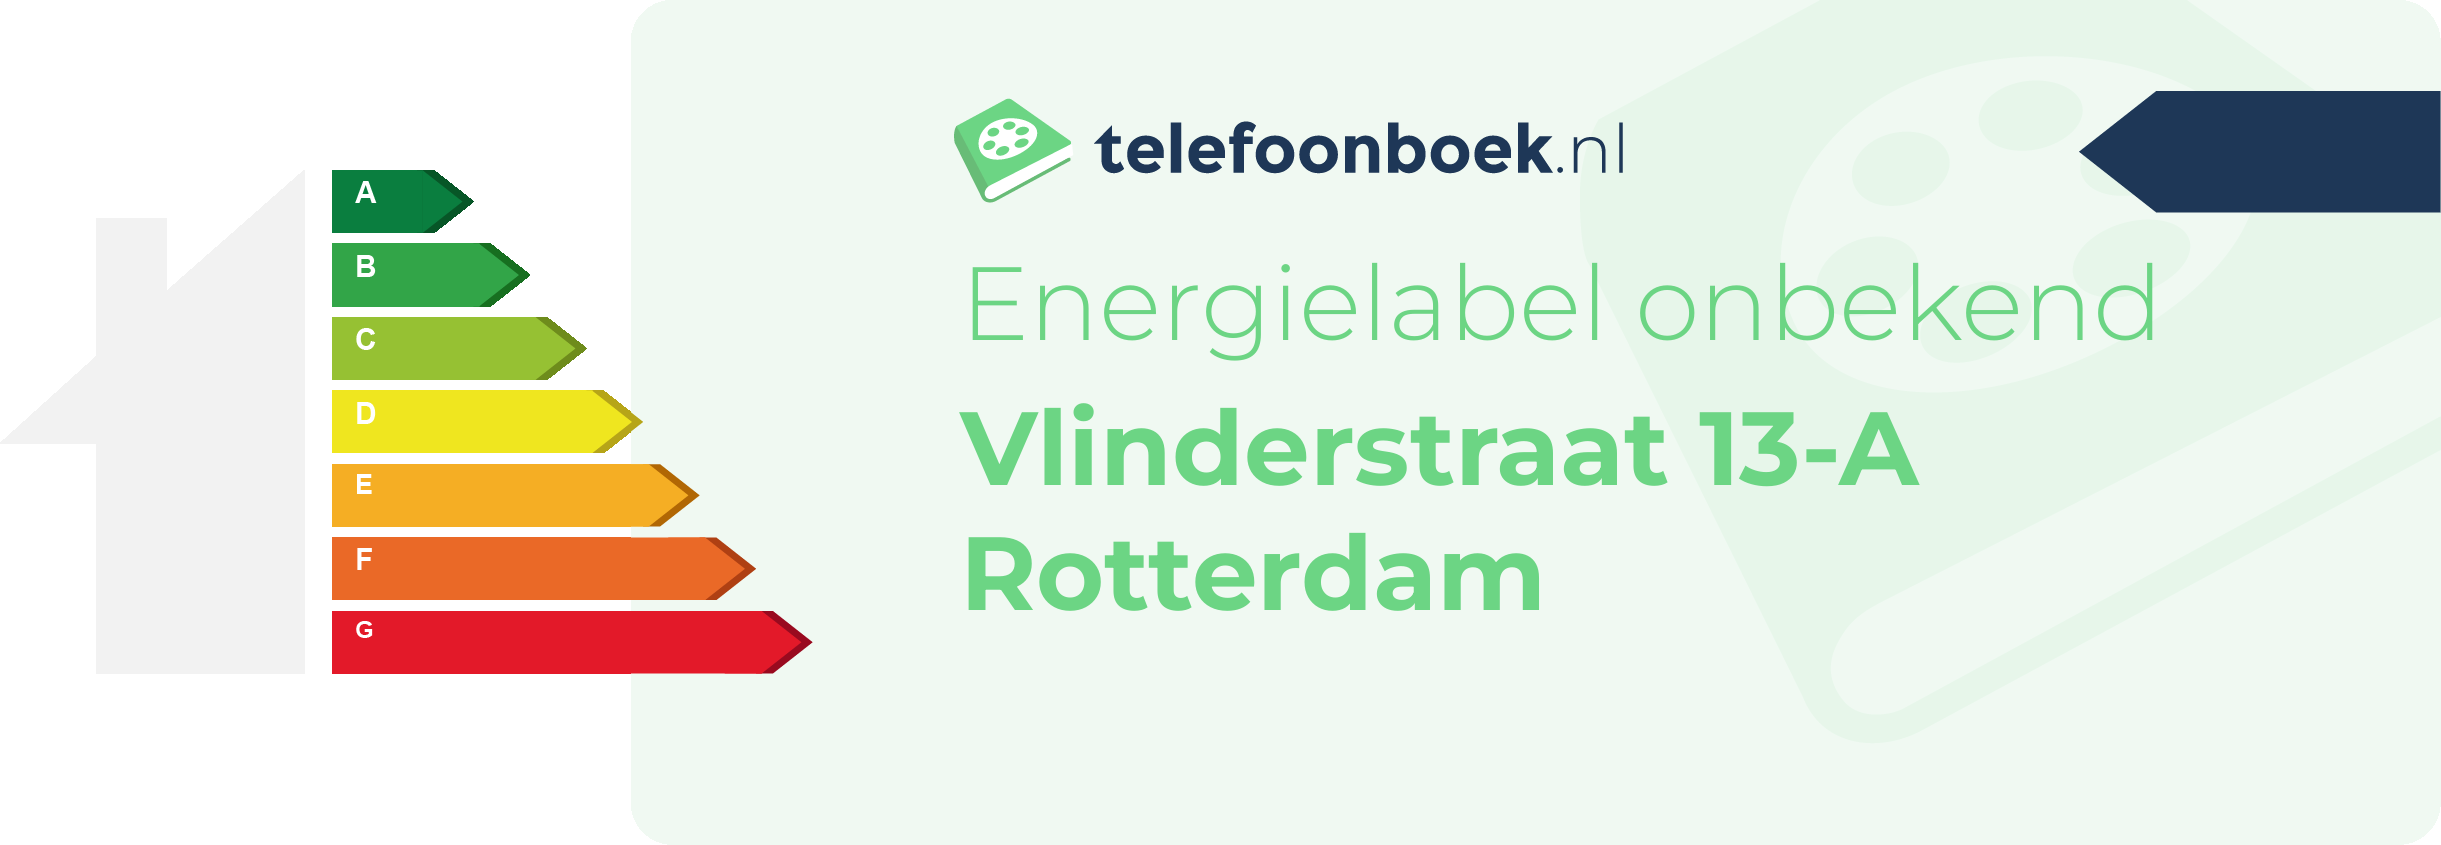 Energielabel Vlinderstraat 13-A Rotterdam